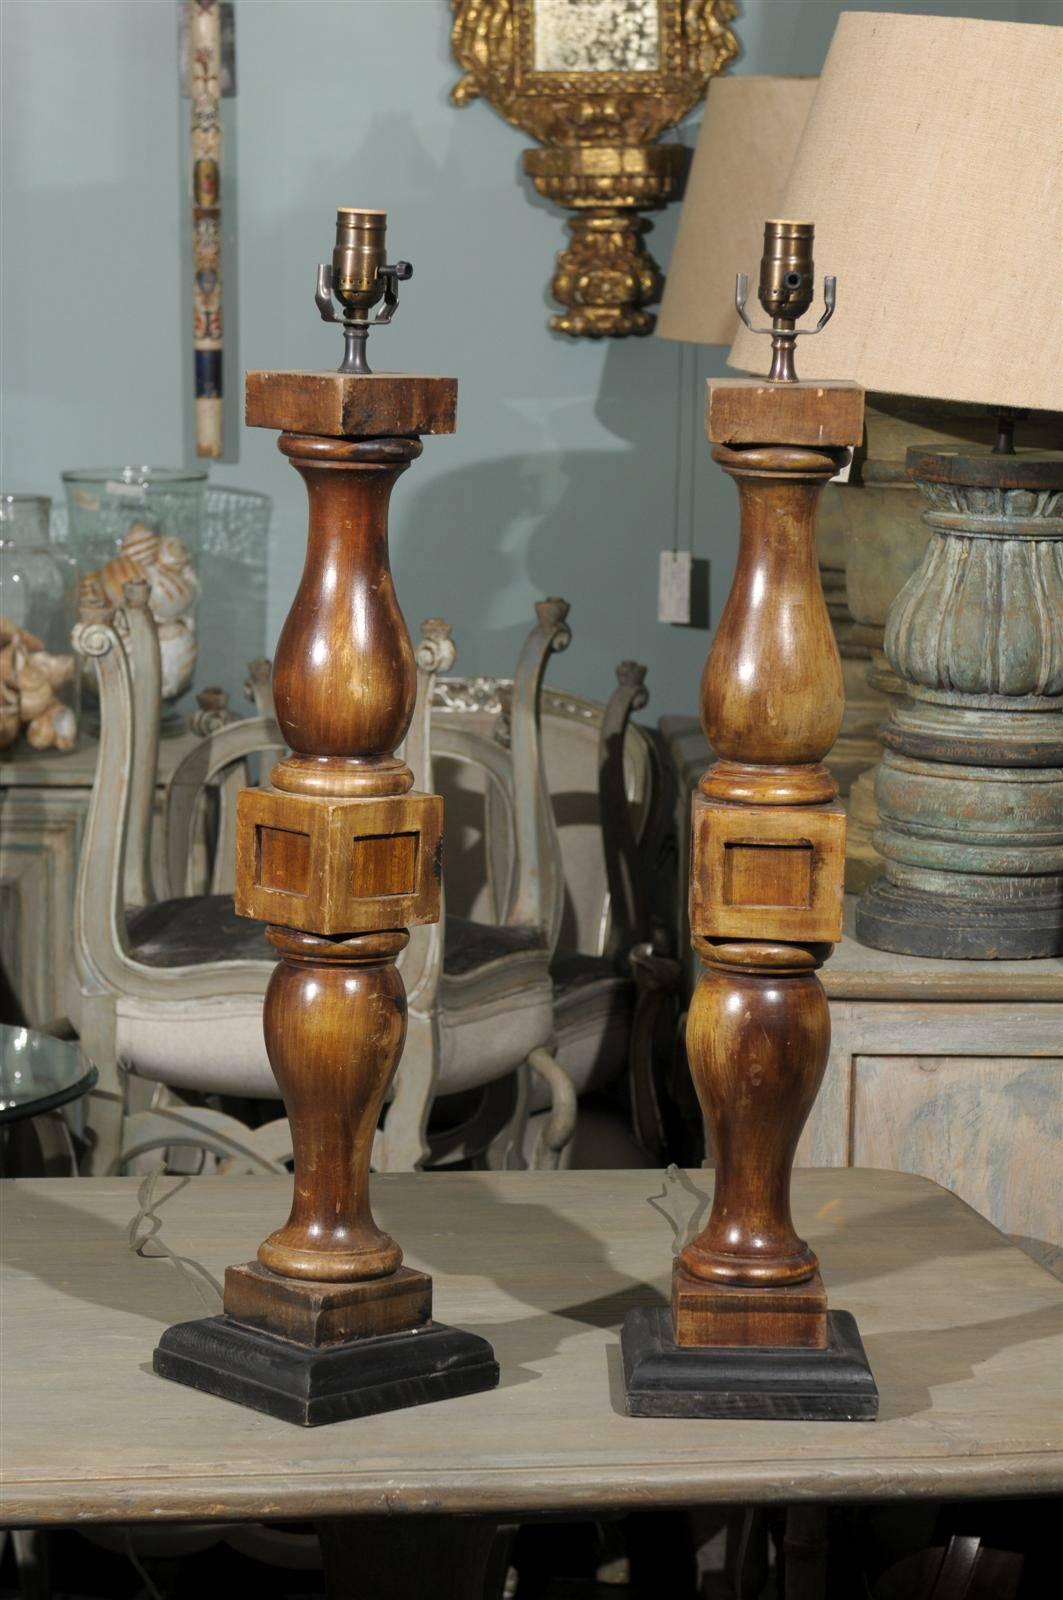 Paire de lampes de table de rampe en bois tourné d'architecture, teintées en brun. Cette paire de lampes de table américaines des années 1920 repose sur une base carrée peinte en noir. La paire est câblée pour le marché américain. Les mesures